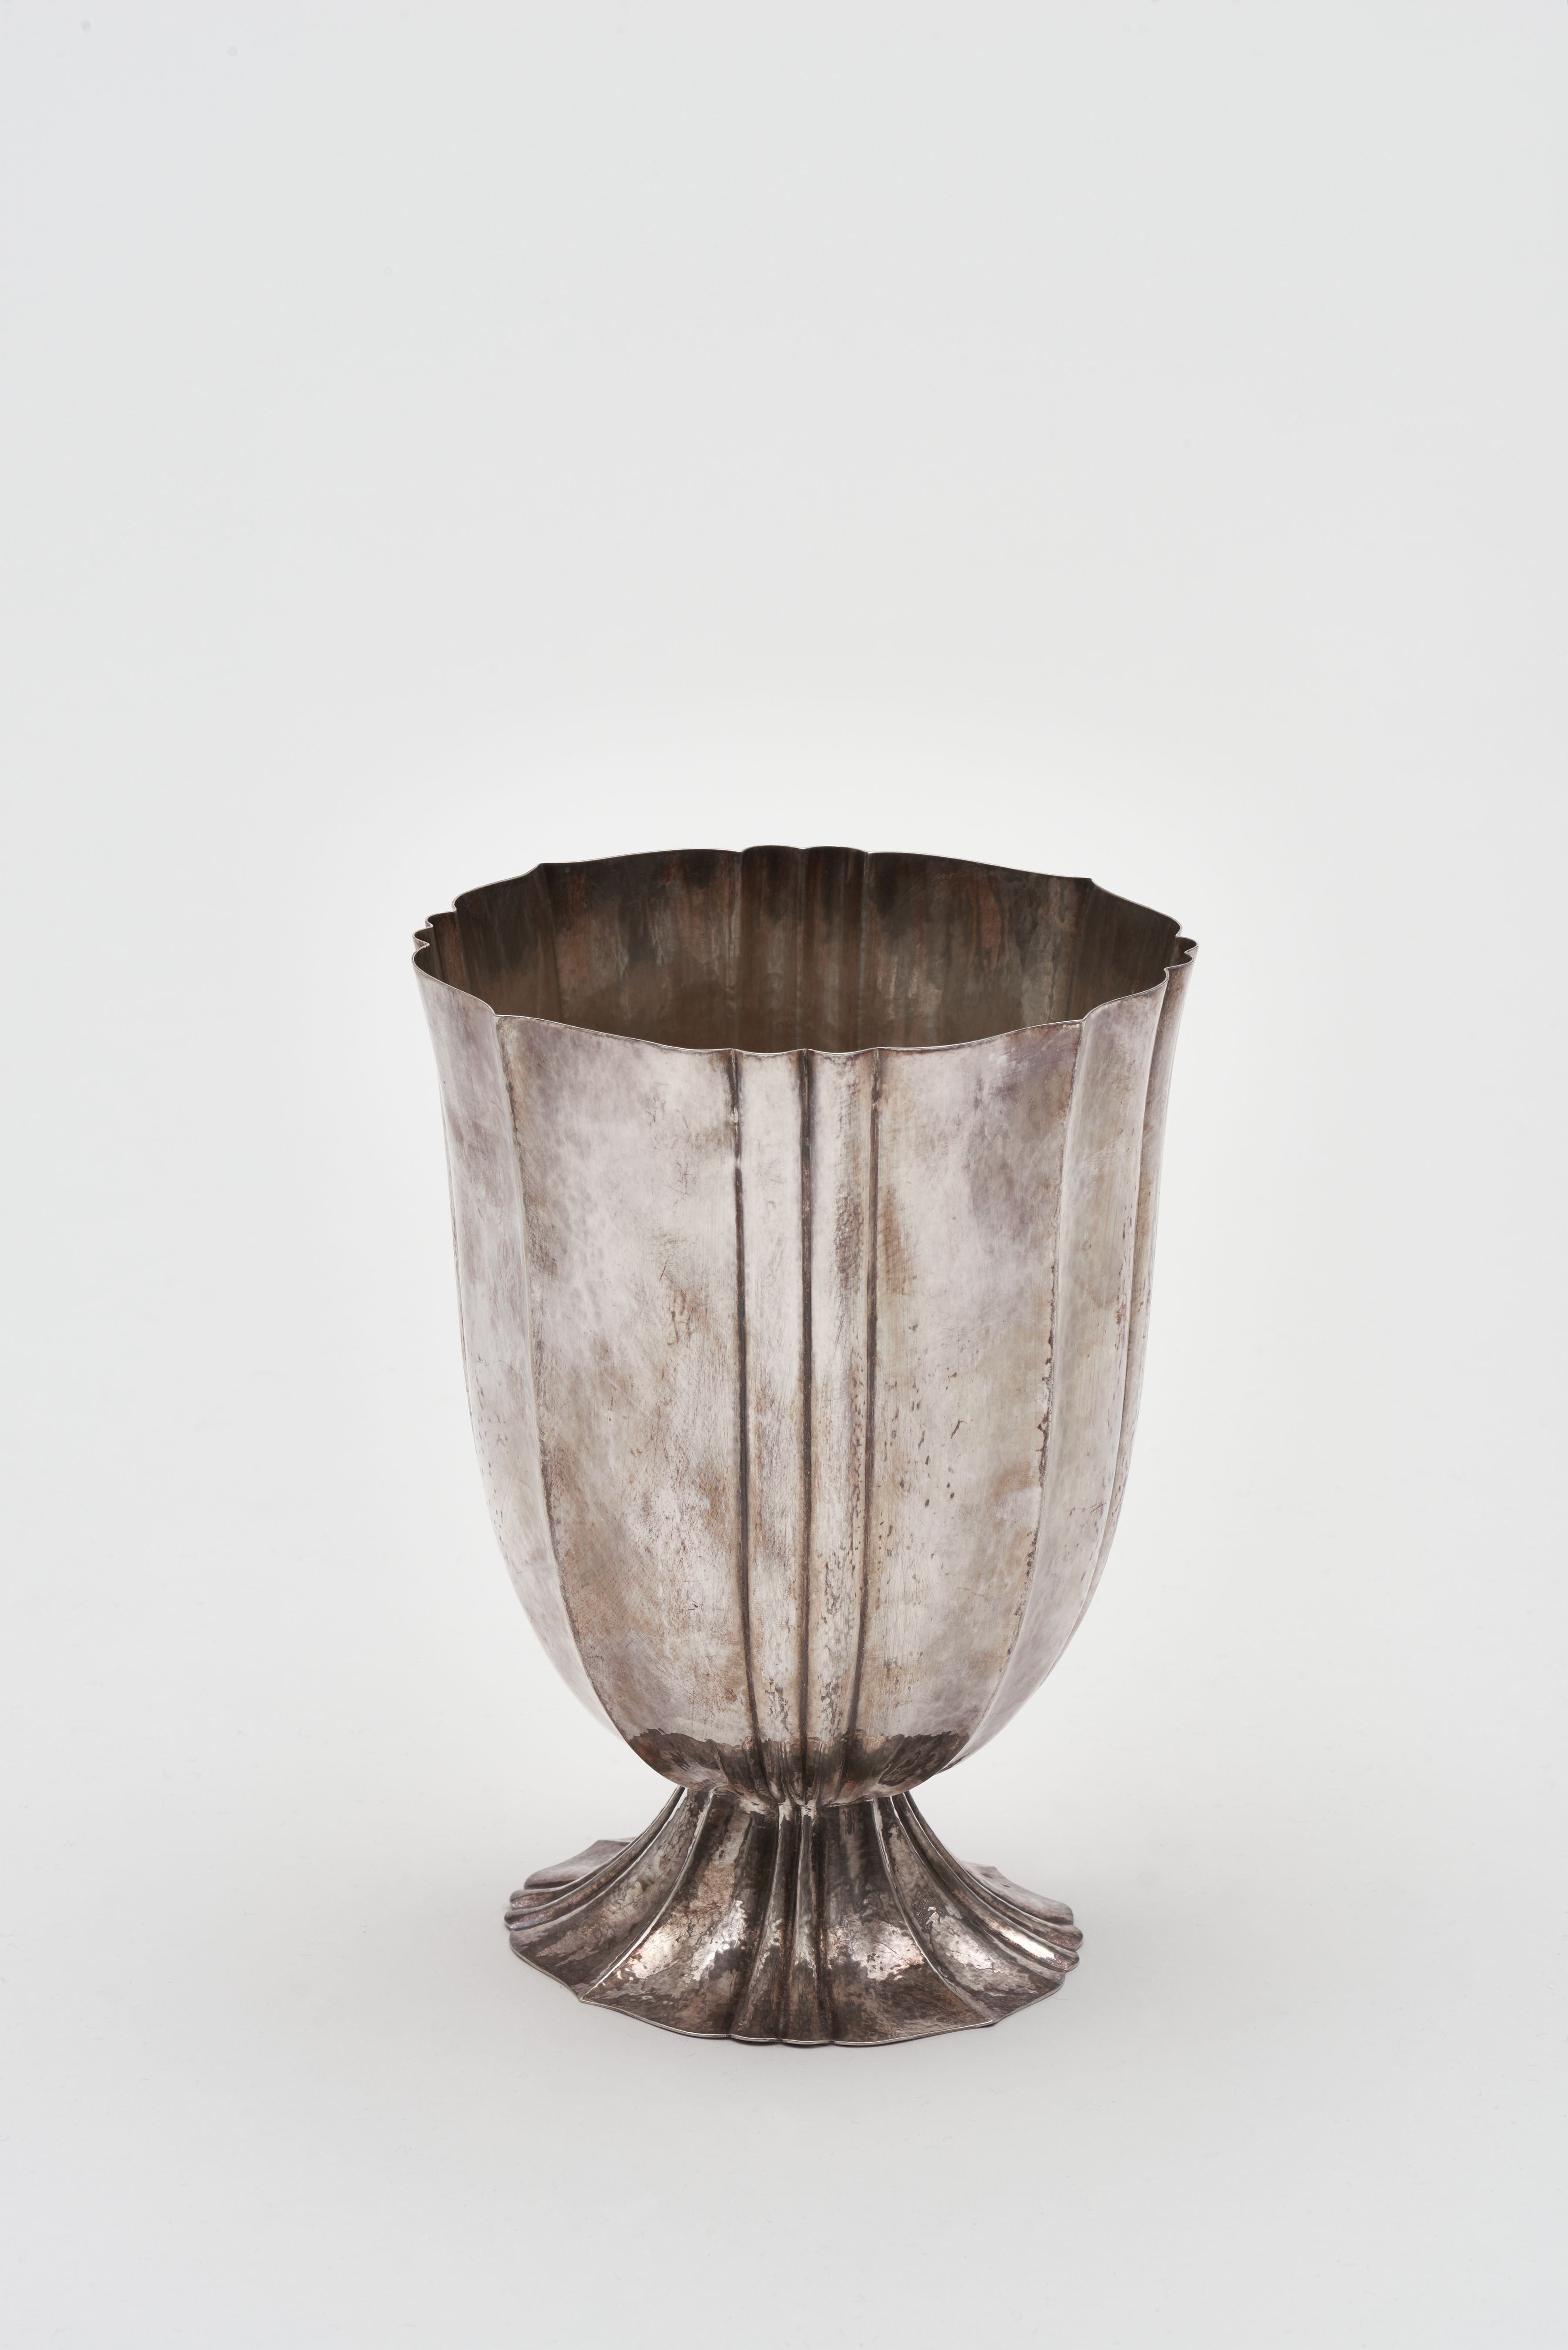 <BODY><div>Josef Hoffmann, Flower vase, before 1920</div><div>© MAK/Georg Mayer</div></BODY>